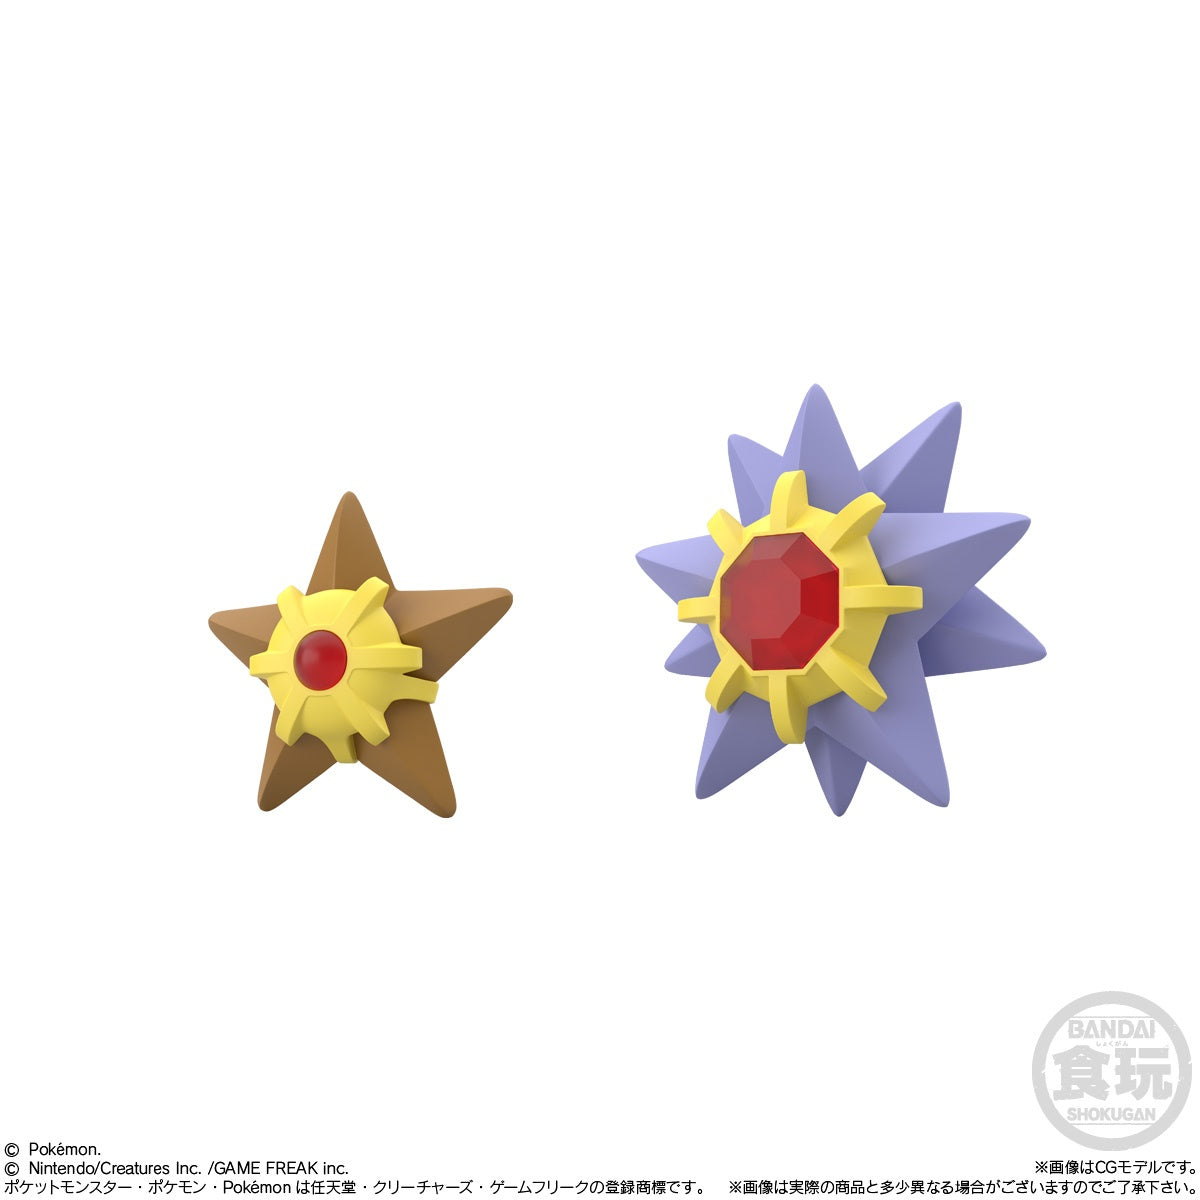 Bandai - Shokugan - Pokemon Scale World - Kanto Region - Set 3 (Reissue) - Marvelous Toys